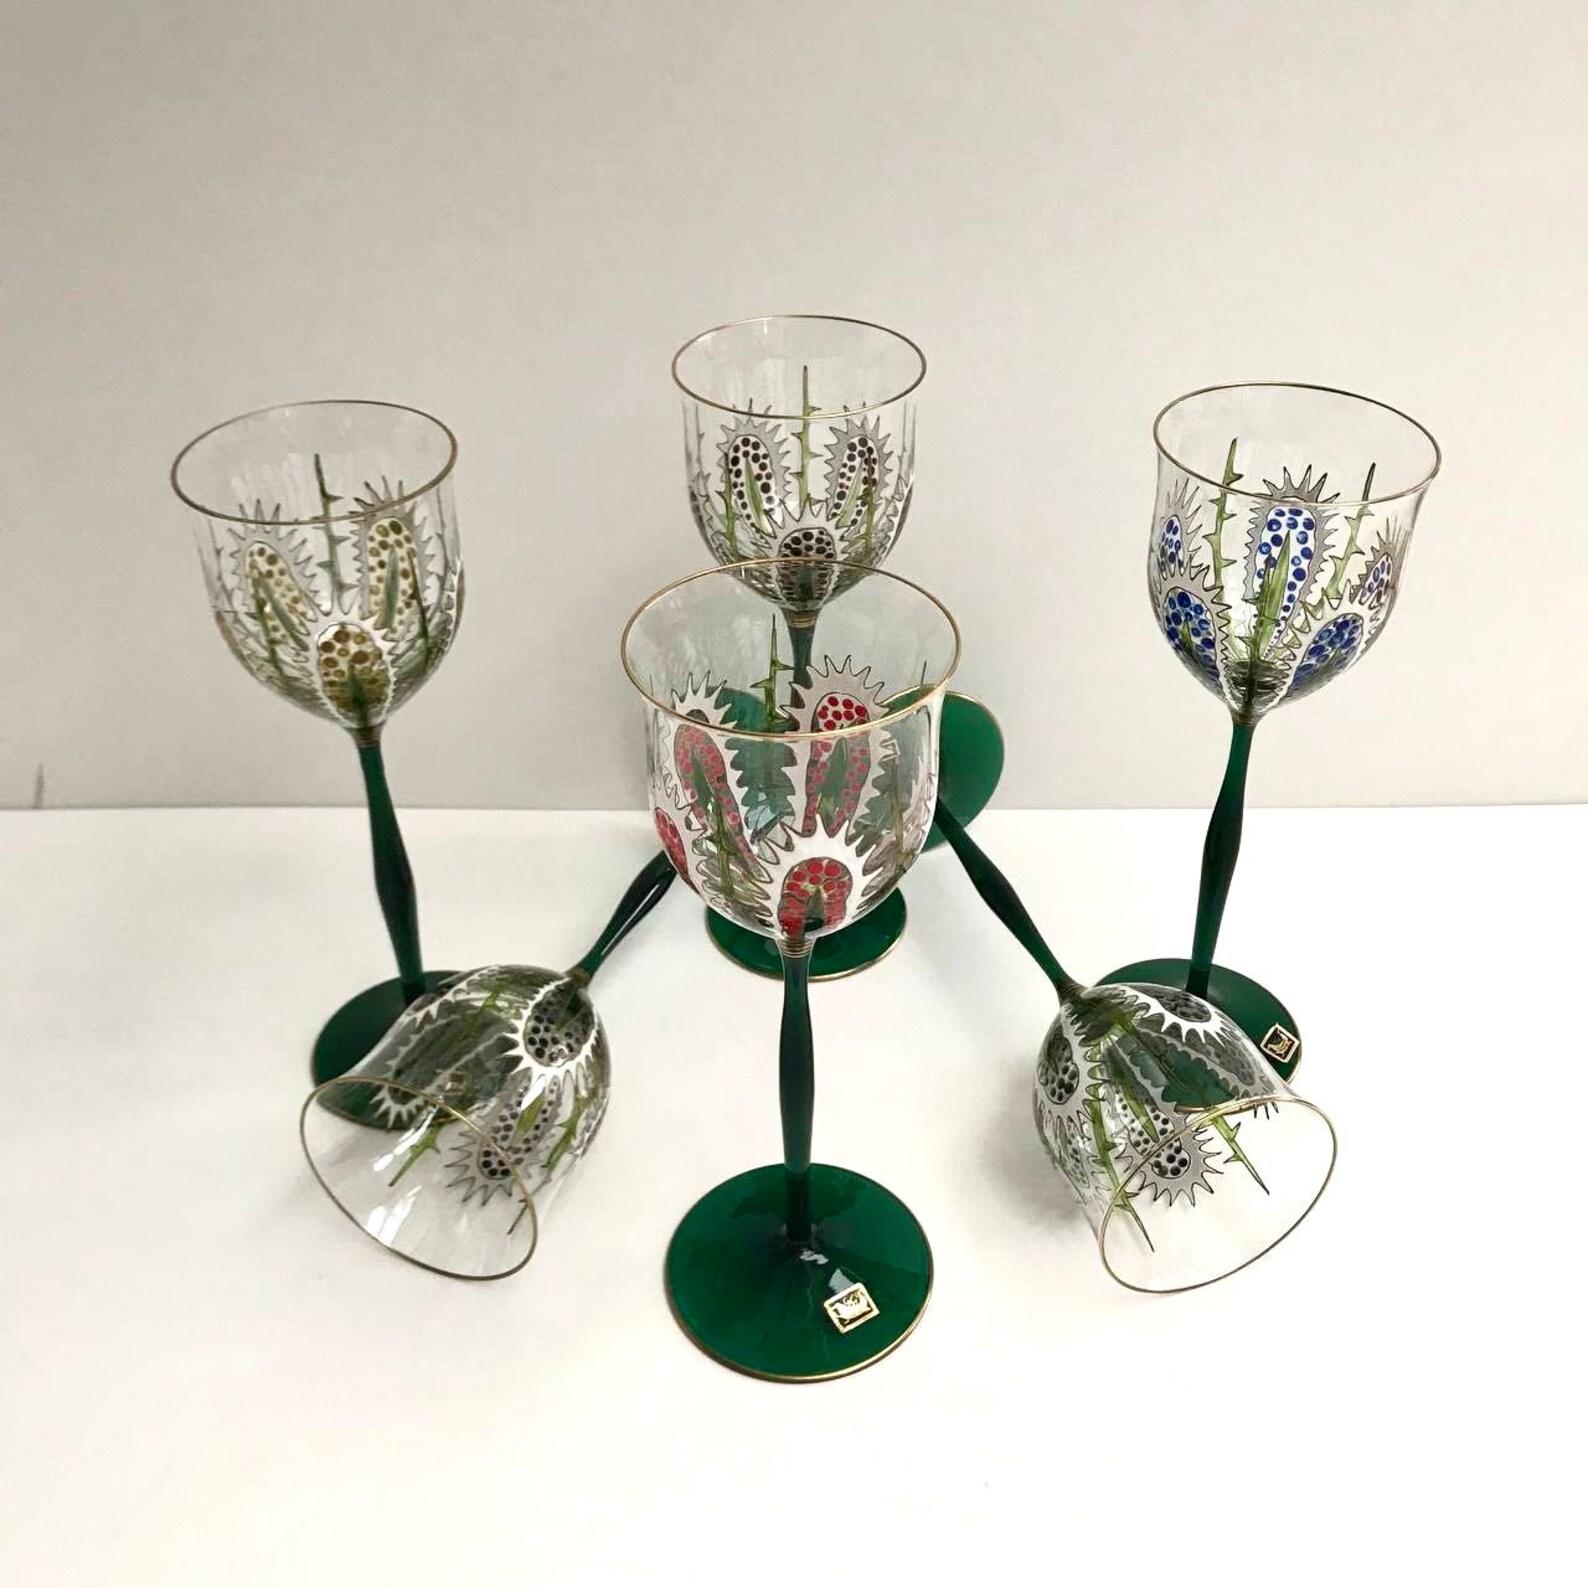 Hand-Crafted Vintage Crystal Glasses Gluskunst Hirtreiter Rare Set of 6 Glasses, 1980s For Sale